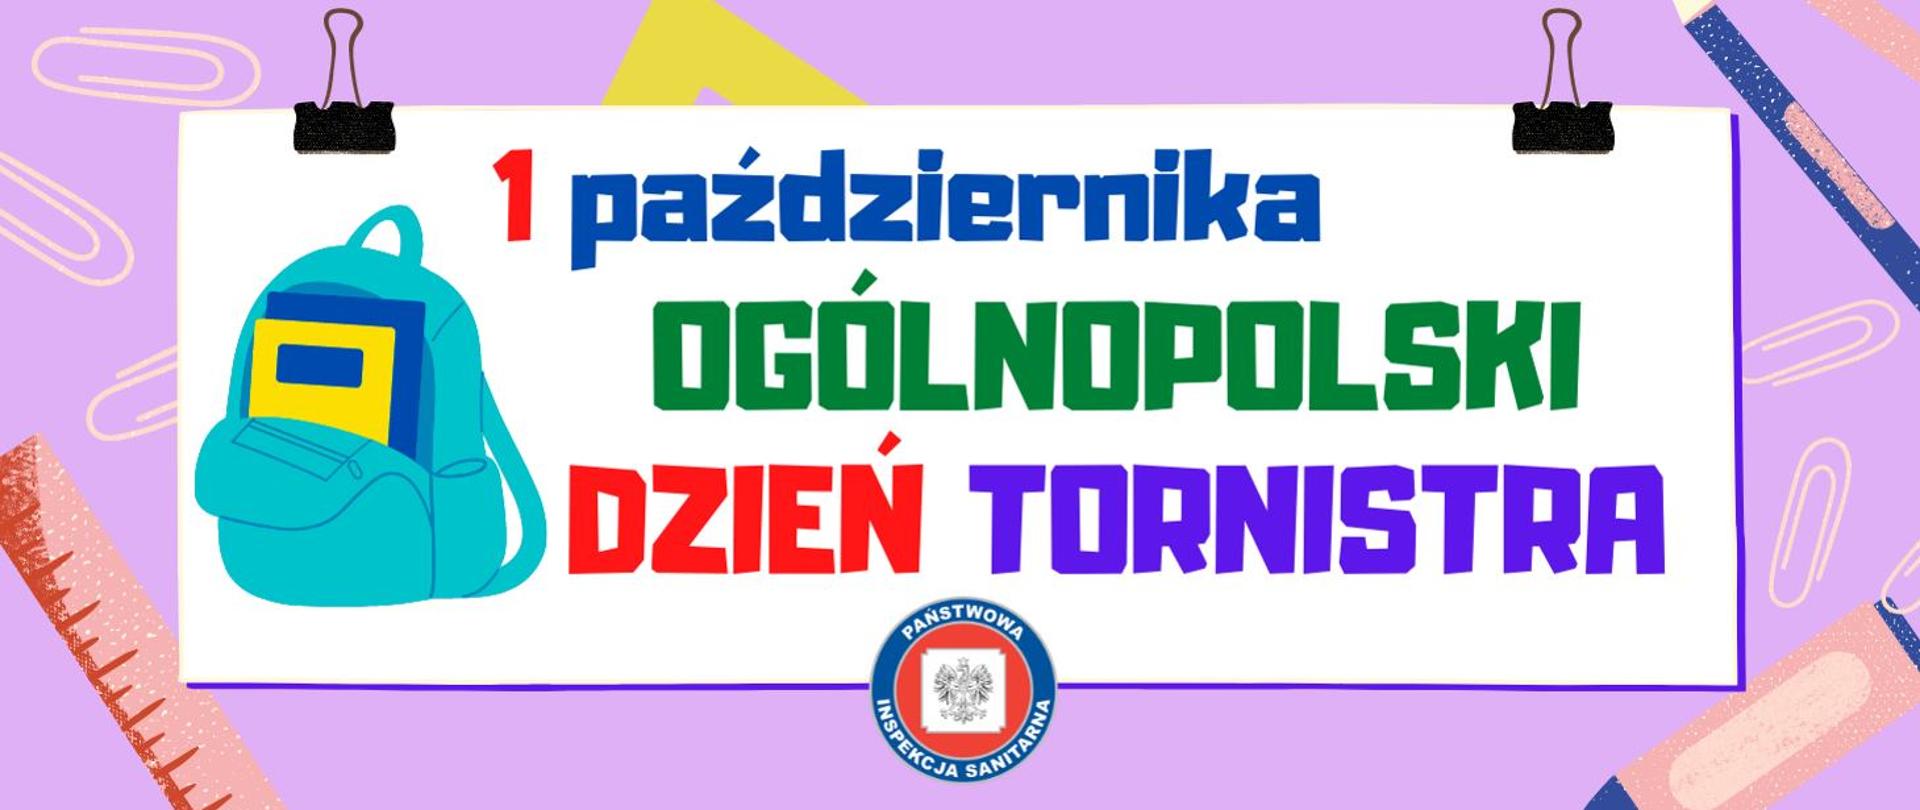 Infografika - Ogólnopolski Dzień Tornistra